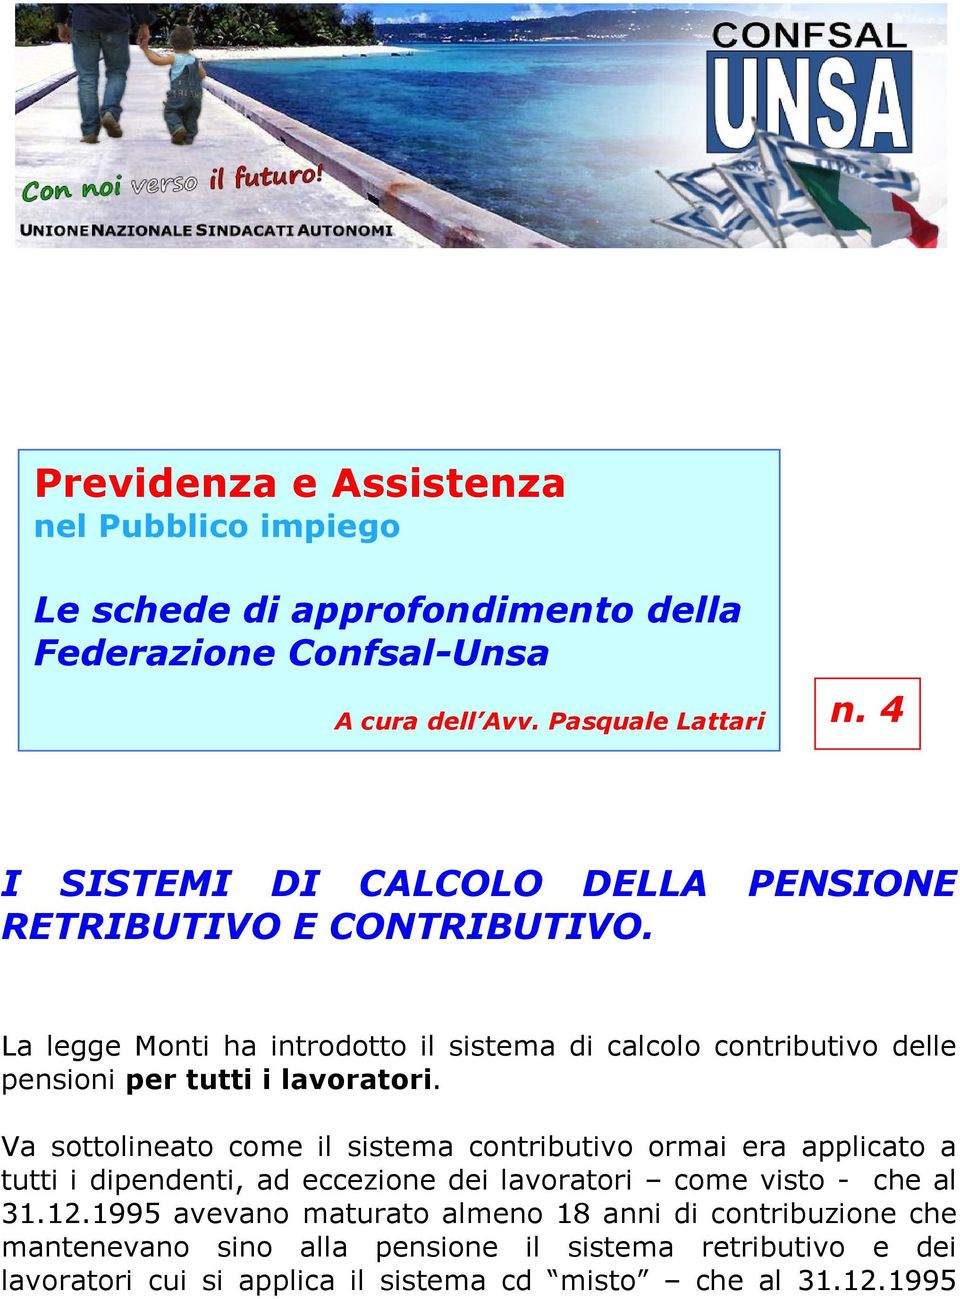 La legge Monti ha introdotto il sistema di calcolo contributivo delle pensioni per tutti i lavoratori.